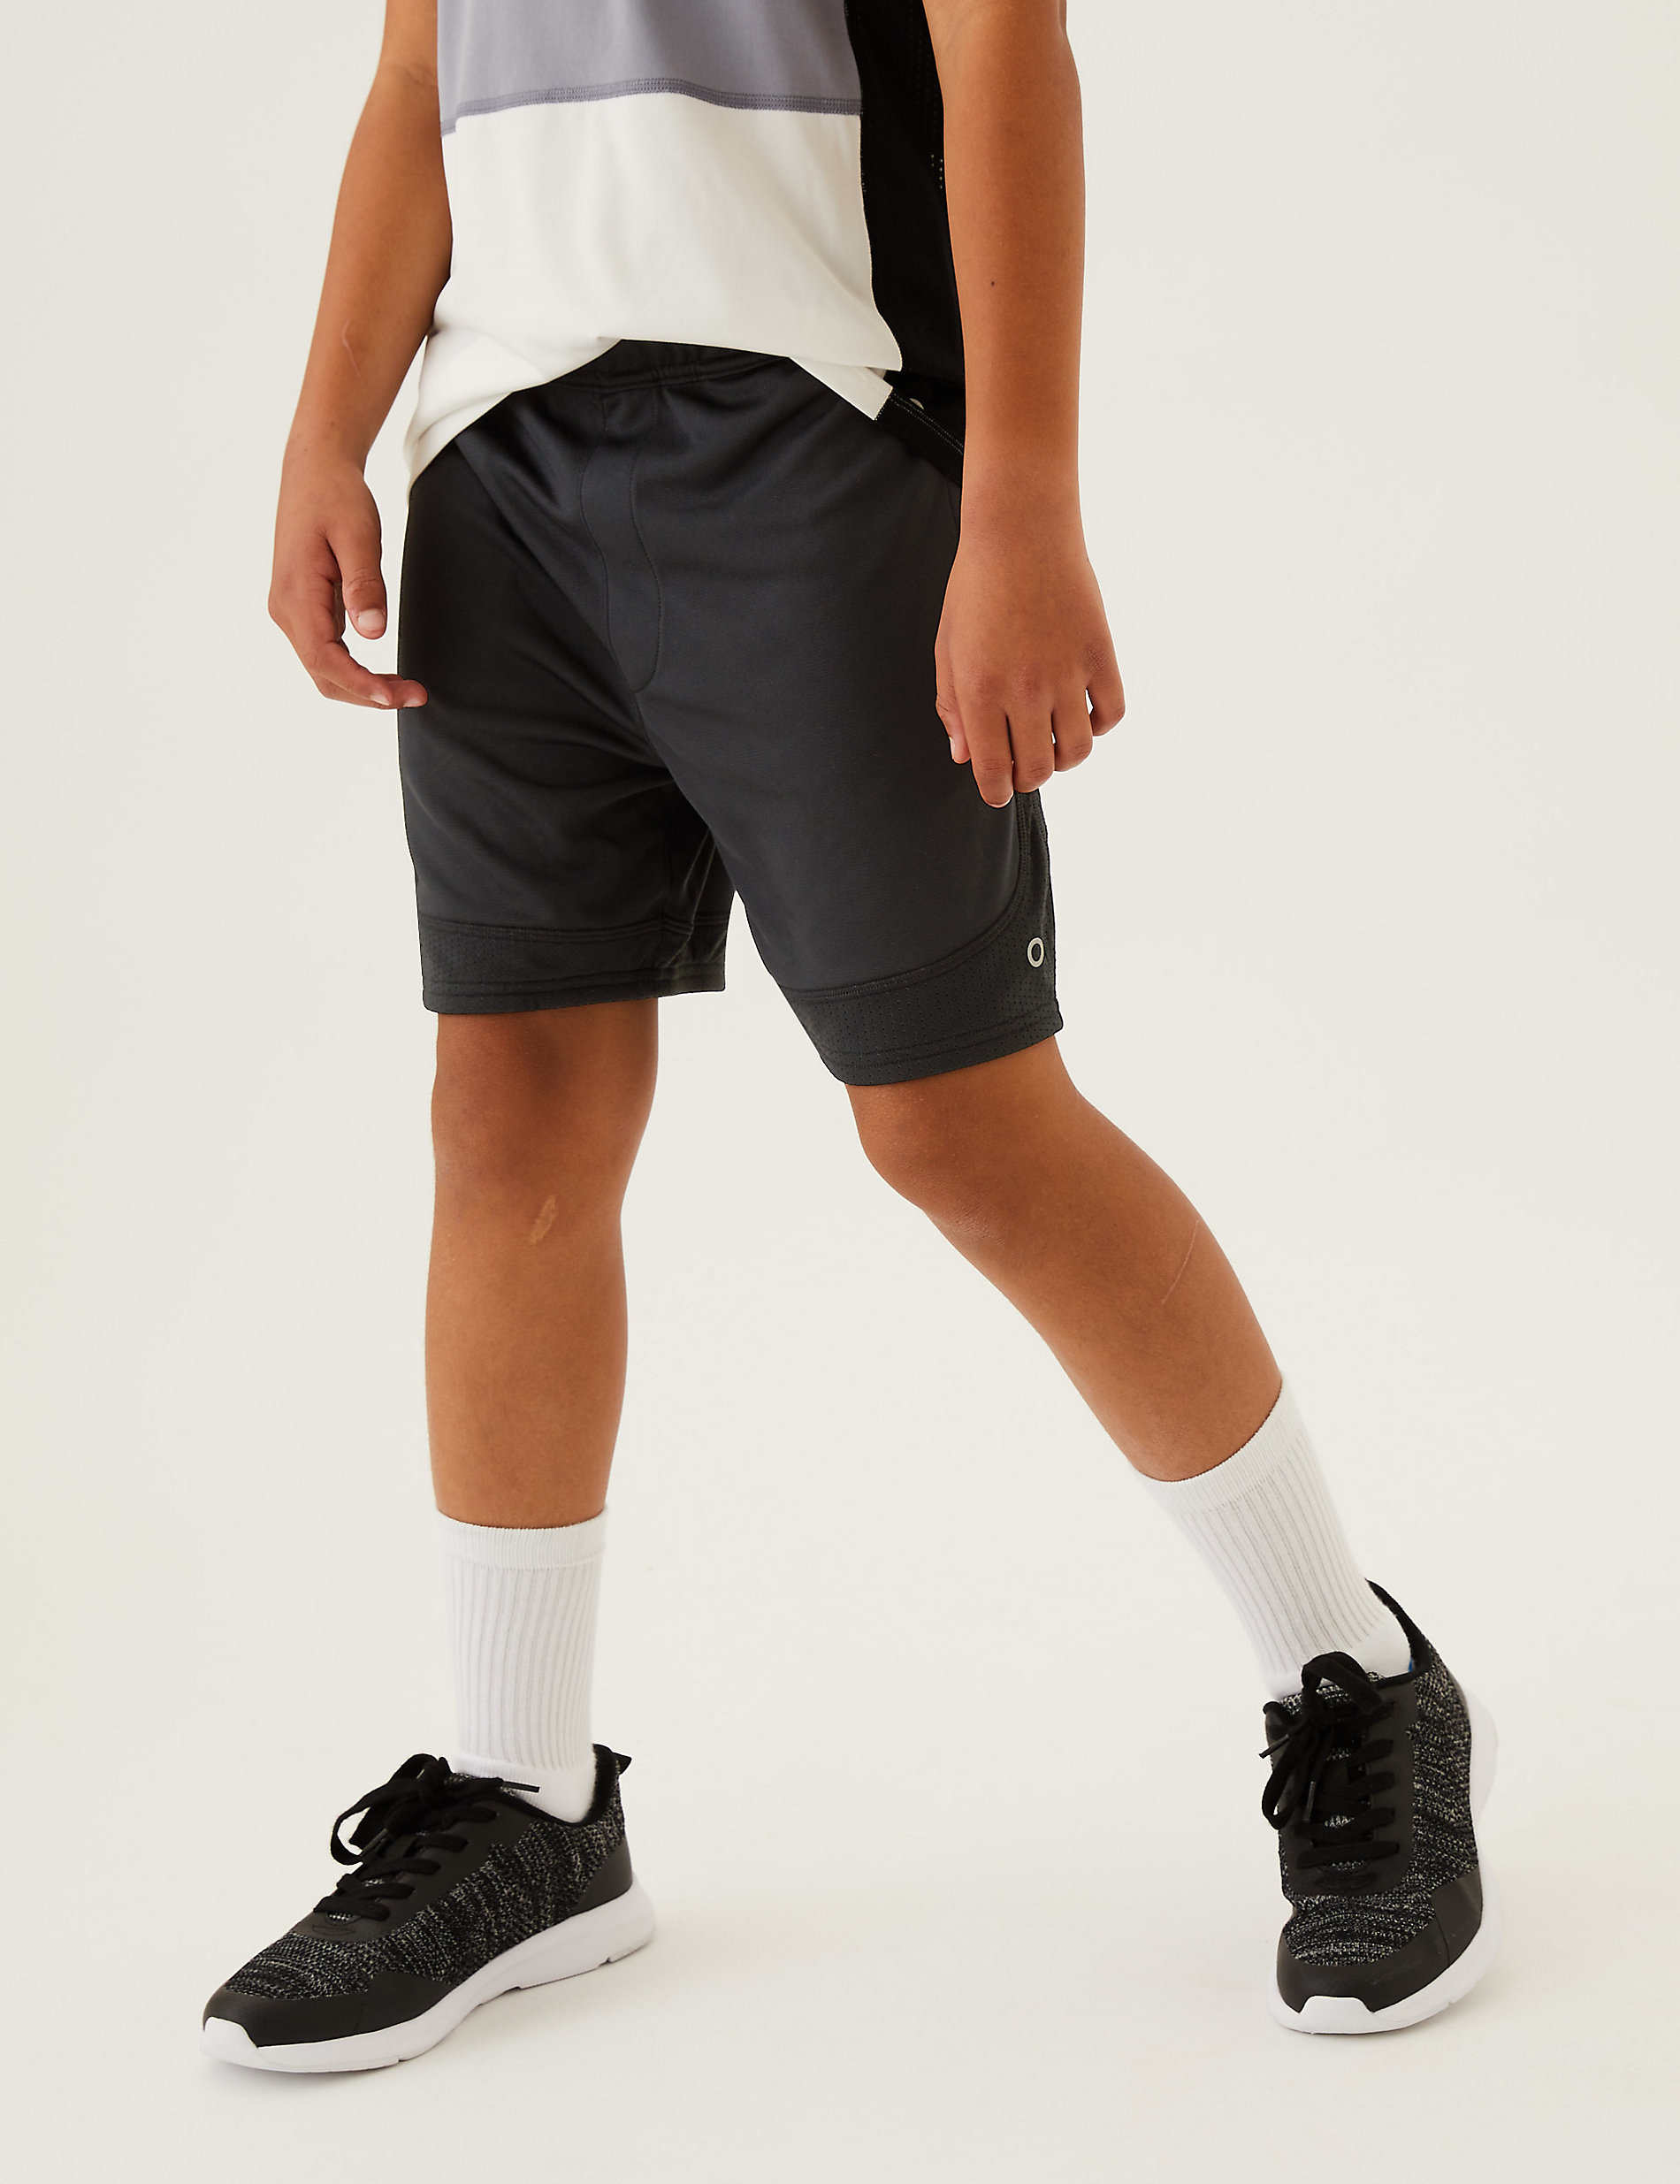 Active Wear Shorts (6-14 Yrs)